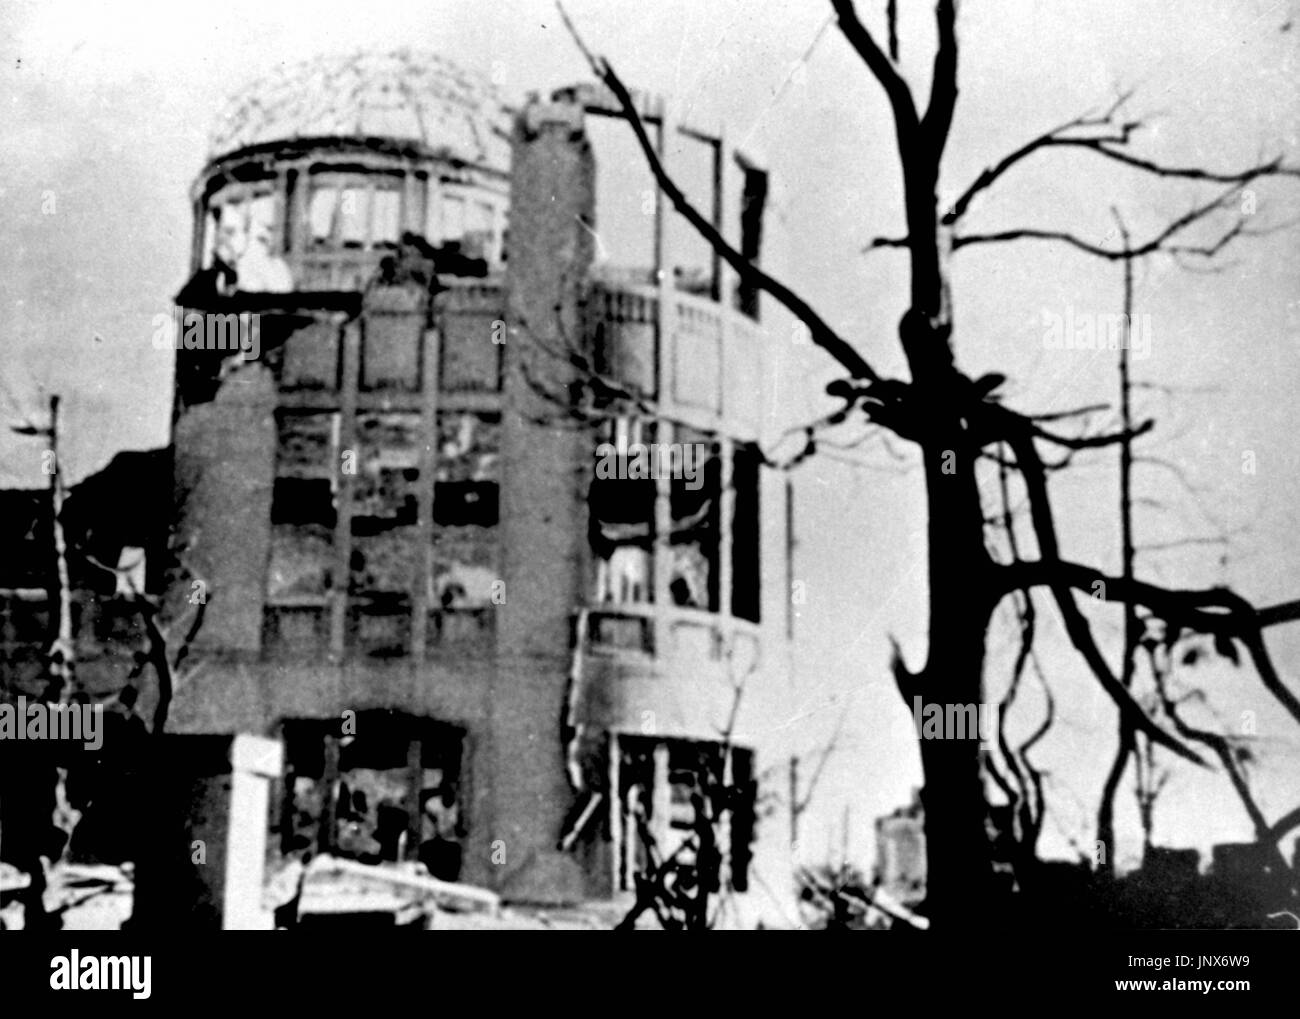 HIROSHIMA, JAPON - Cette photo montre une zone près du Dôme de la bombe atomique à l'épicentre du bombardement atomique sur Hiroshima. La photo a été prise le 6 août 1945. (Kyodo) Banque D'Images